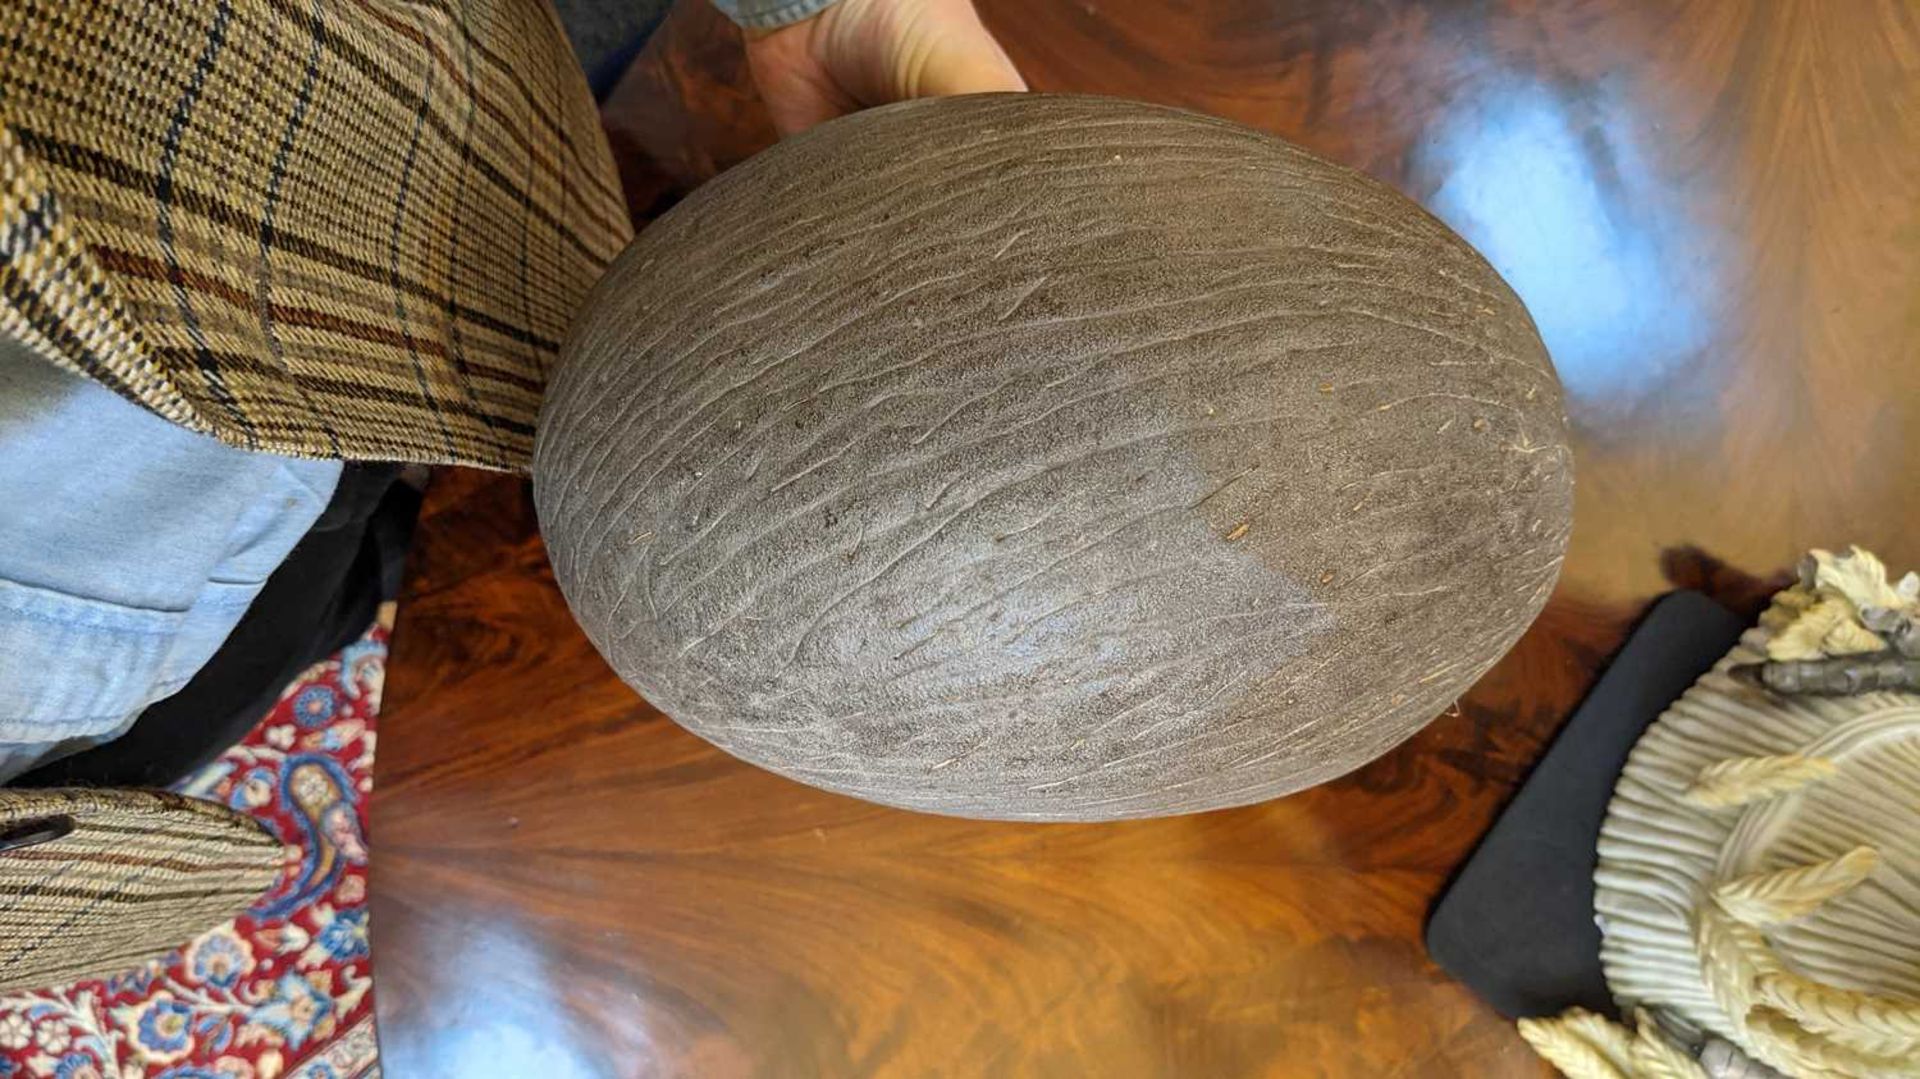 A sea coconut or coco de mer, - Image 6 of 6